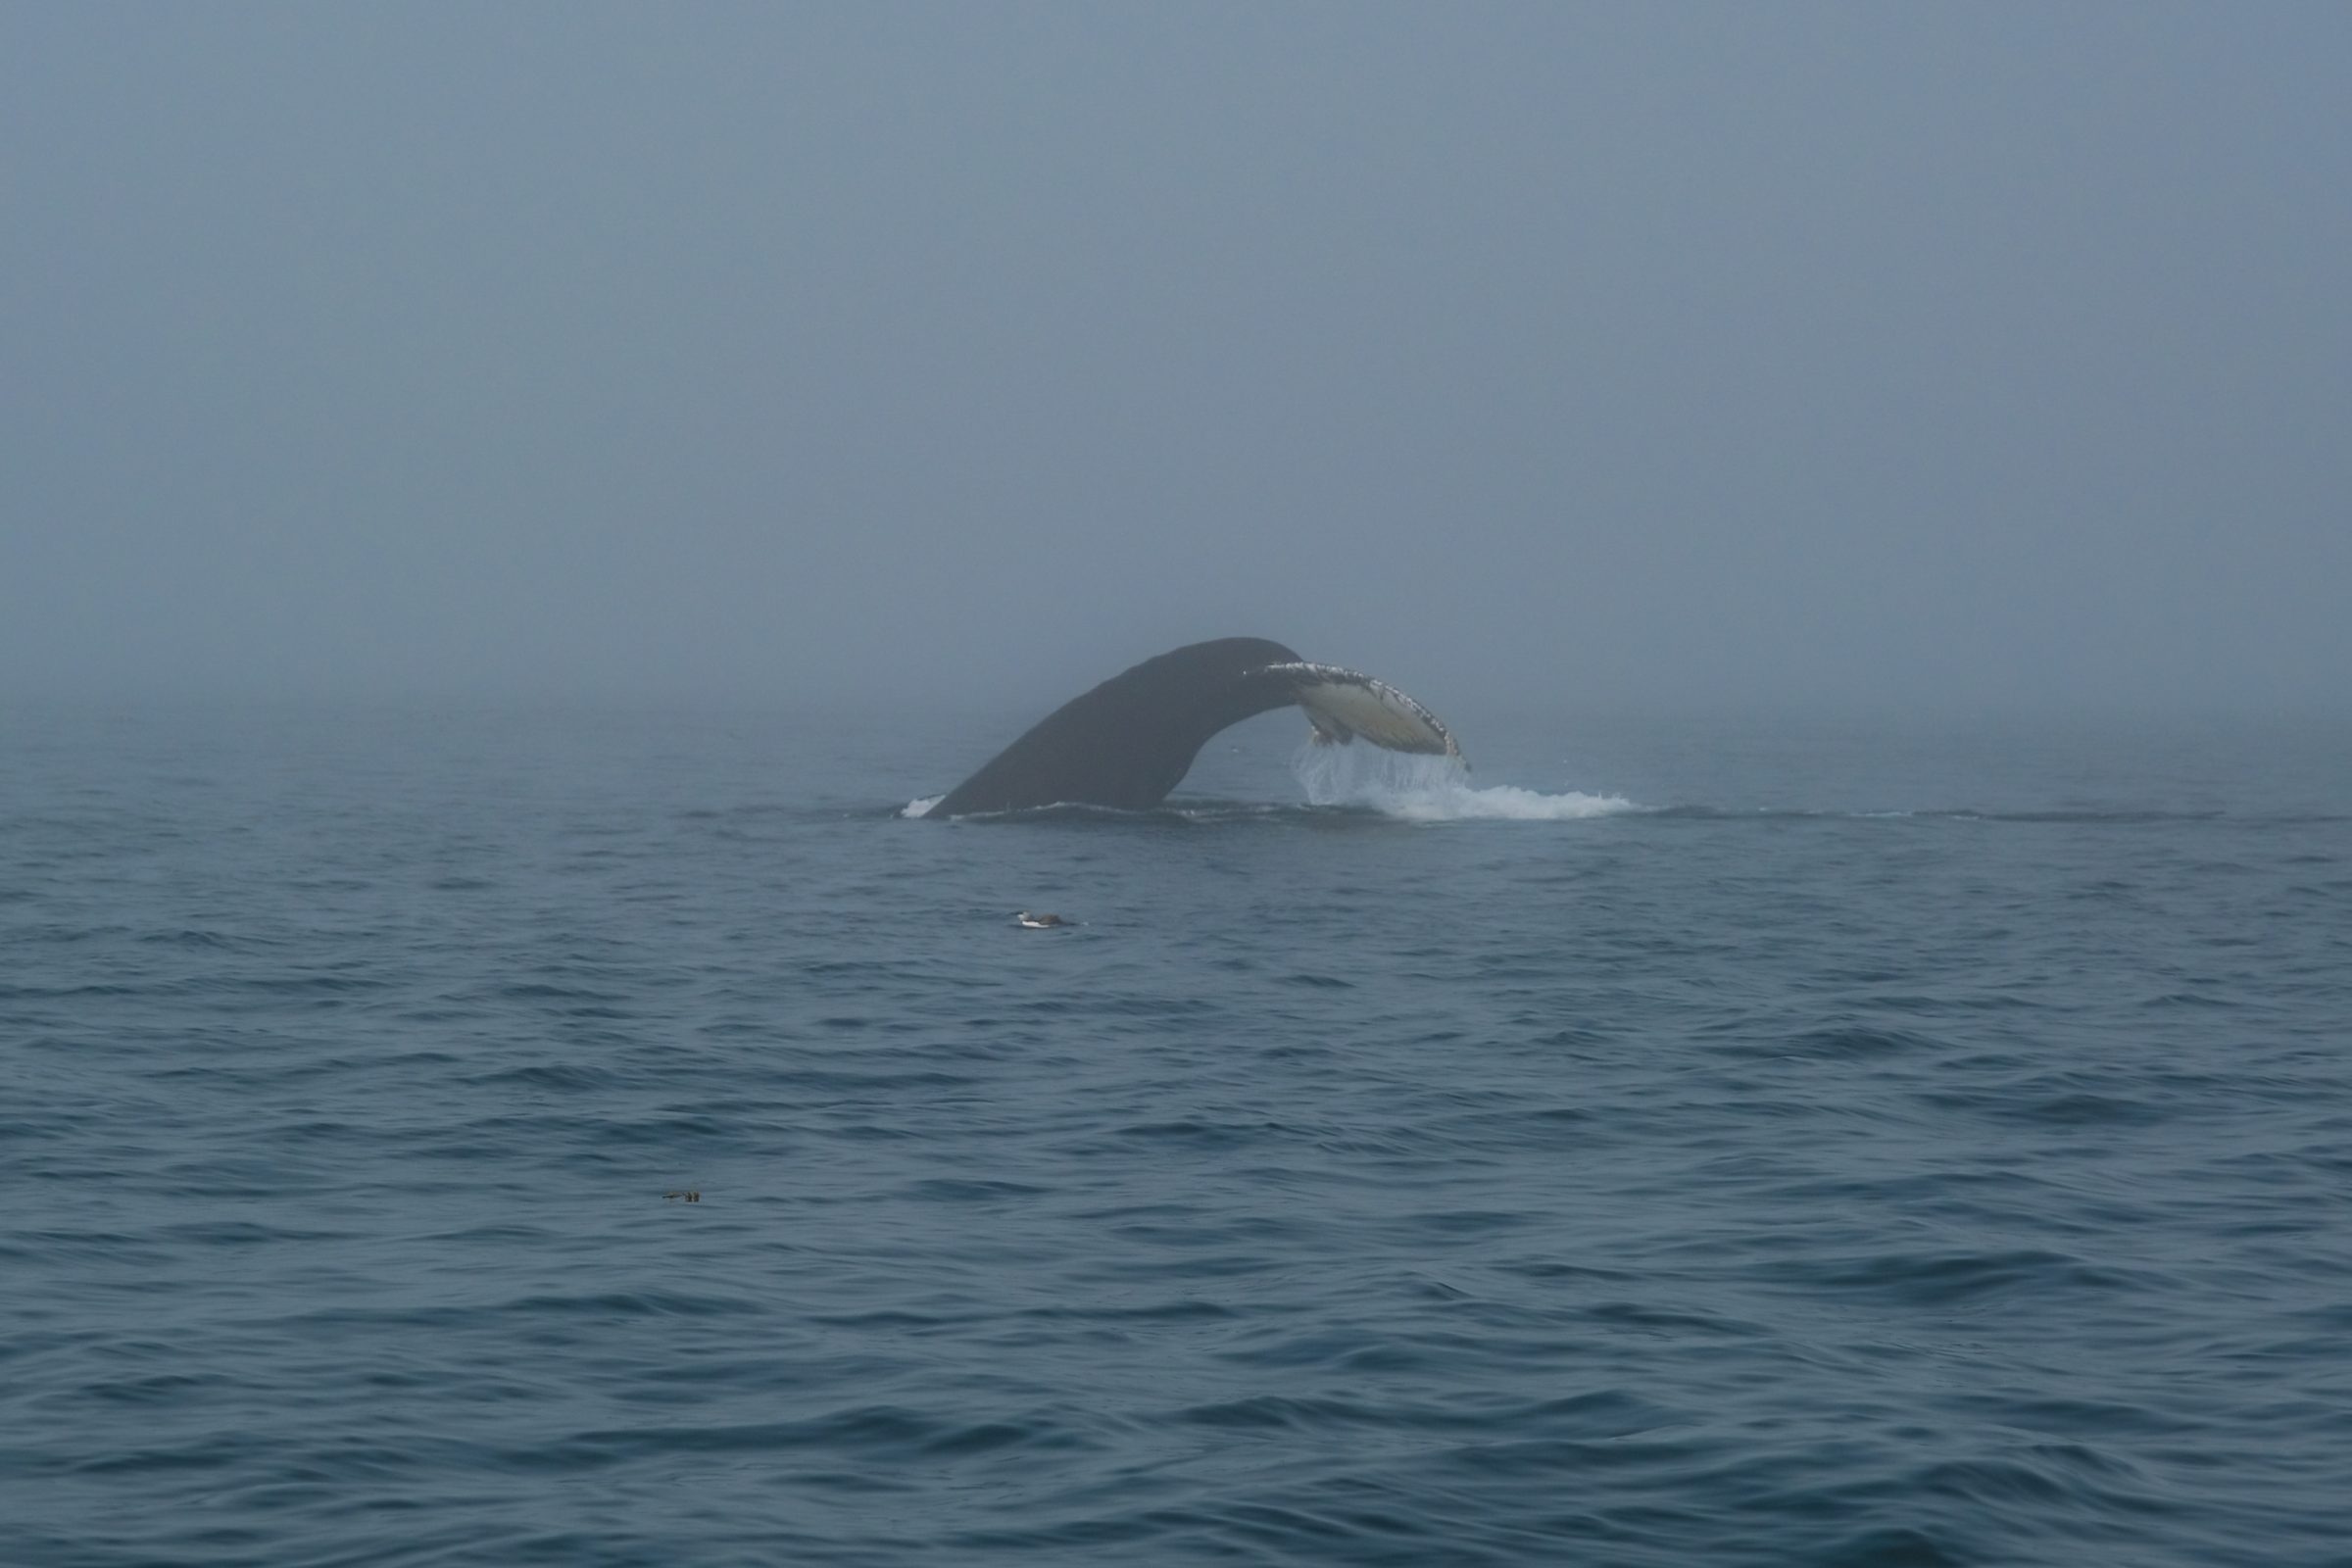 Daar gaat de humpback whale! Prachtig om die staart zo in de lucht te zien